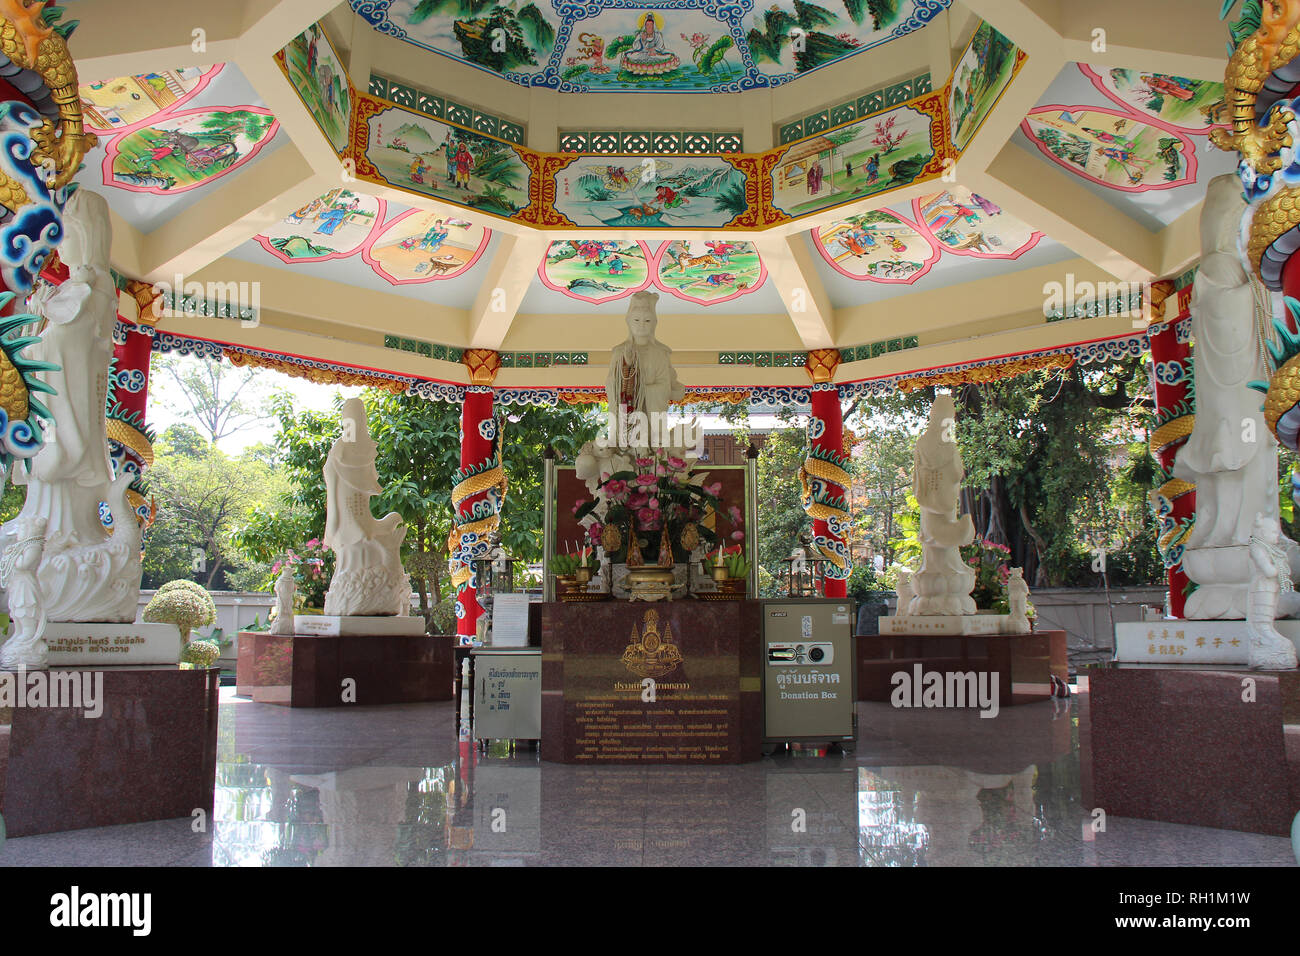 Quiosco chino en el parque Dusit en Bangkok (Tailandia). Foto de stock